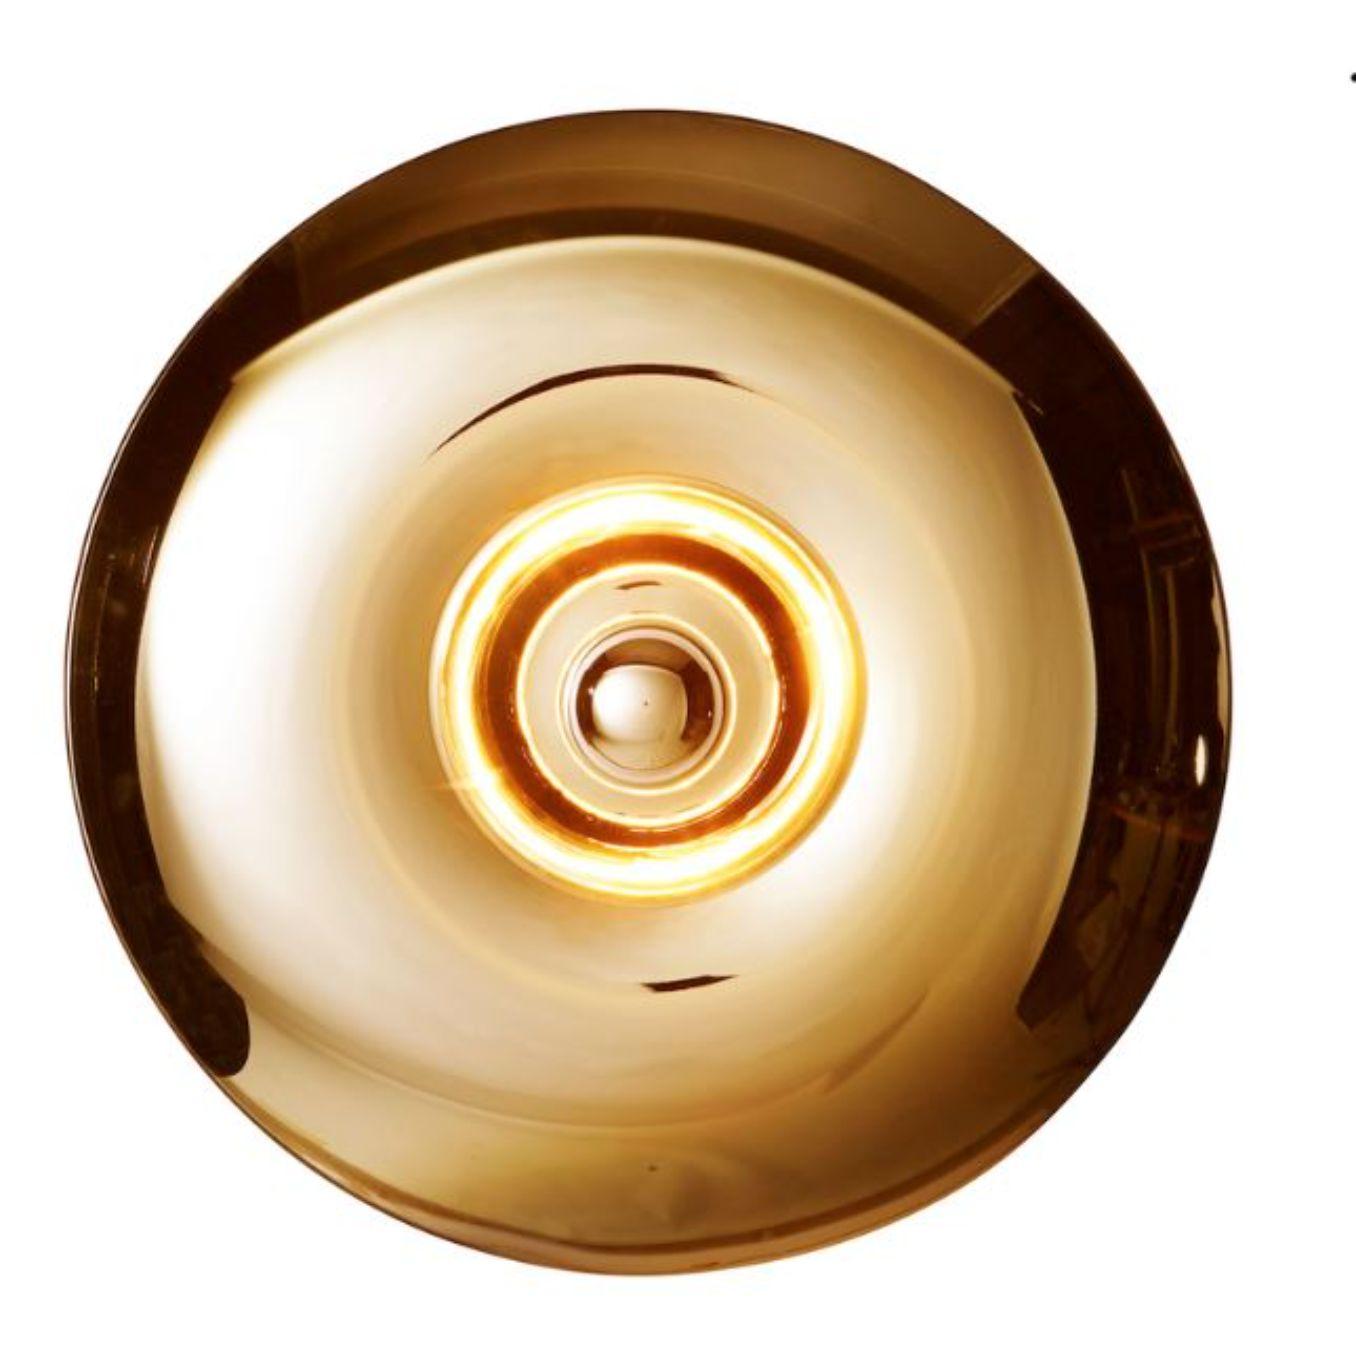 Grande applique dorée Bombato de RADAR
Design/One : Bastien Taillard
Matériaux : Métal, verre. 
Dimensions : L 70 x D&H 20 x H 70 cm
Également disponible en différentes couleurs (or, bronze, Iris) et matériaux (chêne massif). 

Toutes nos lampes